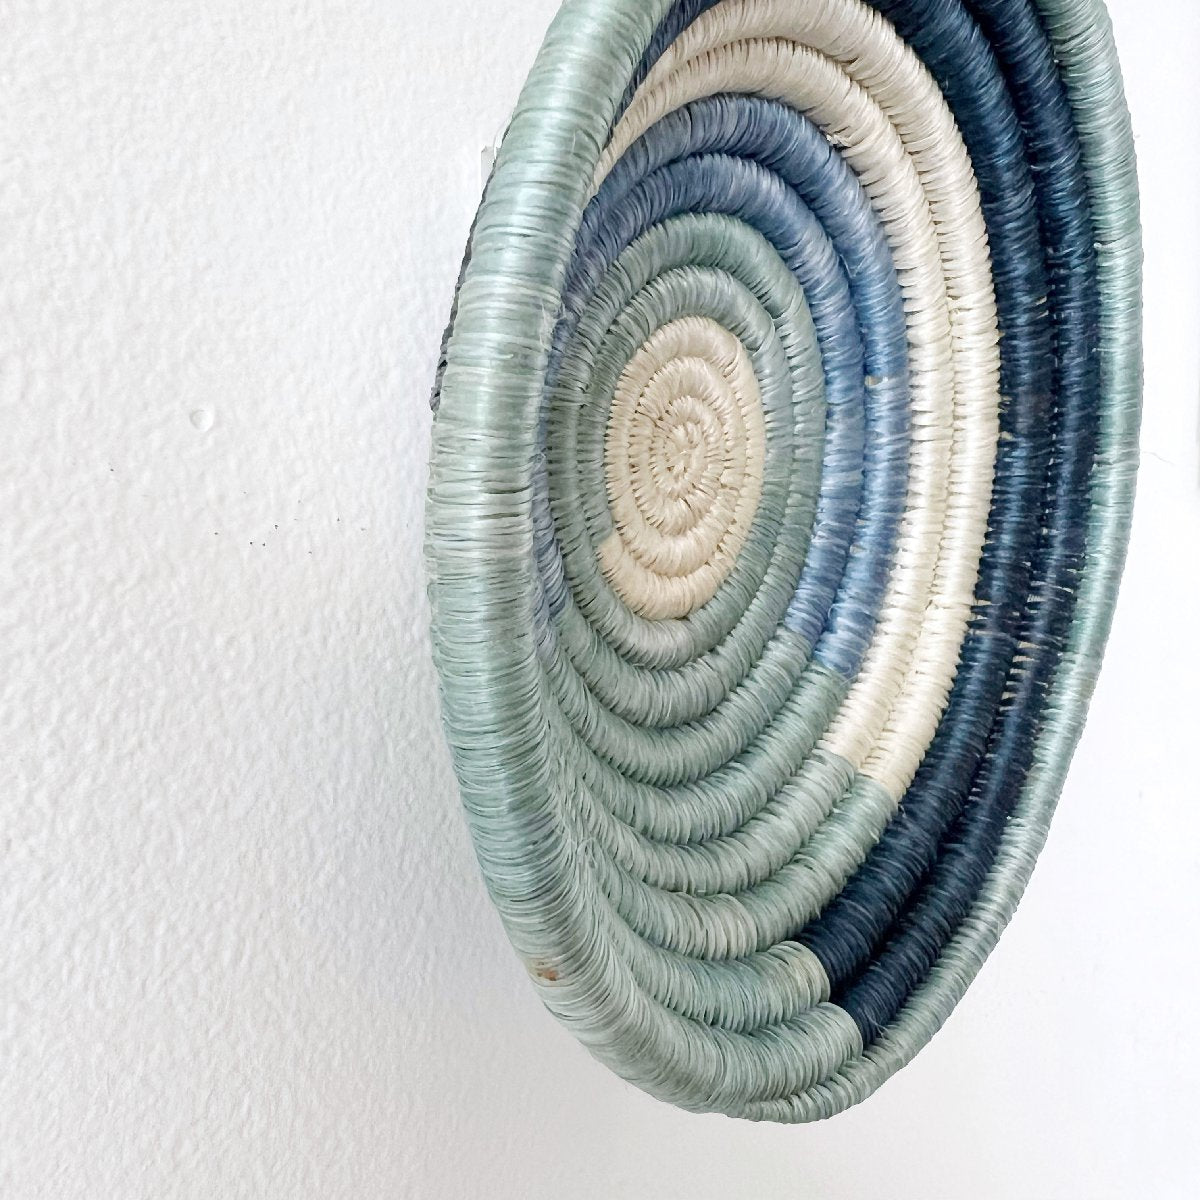 mondocherry - African woven bowl "Mpanga" | small | blue #1 - side